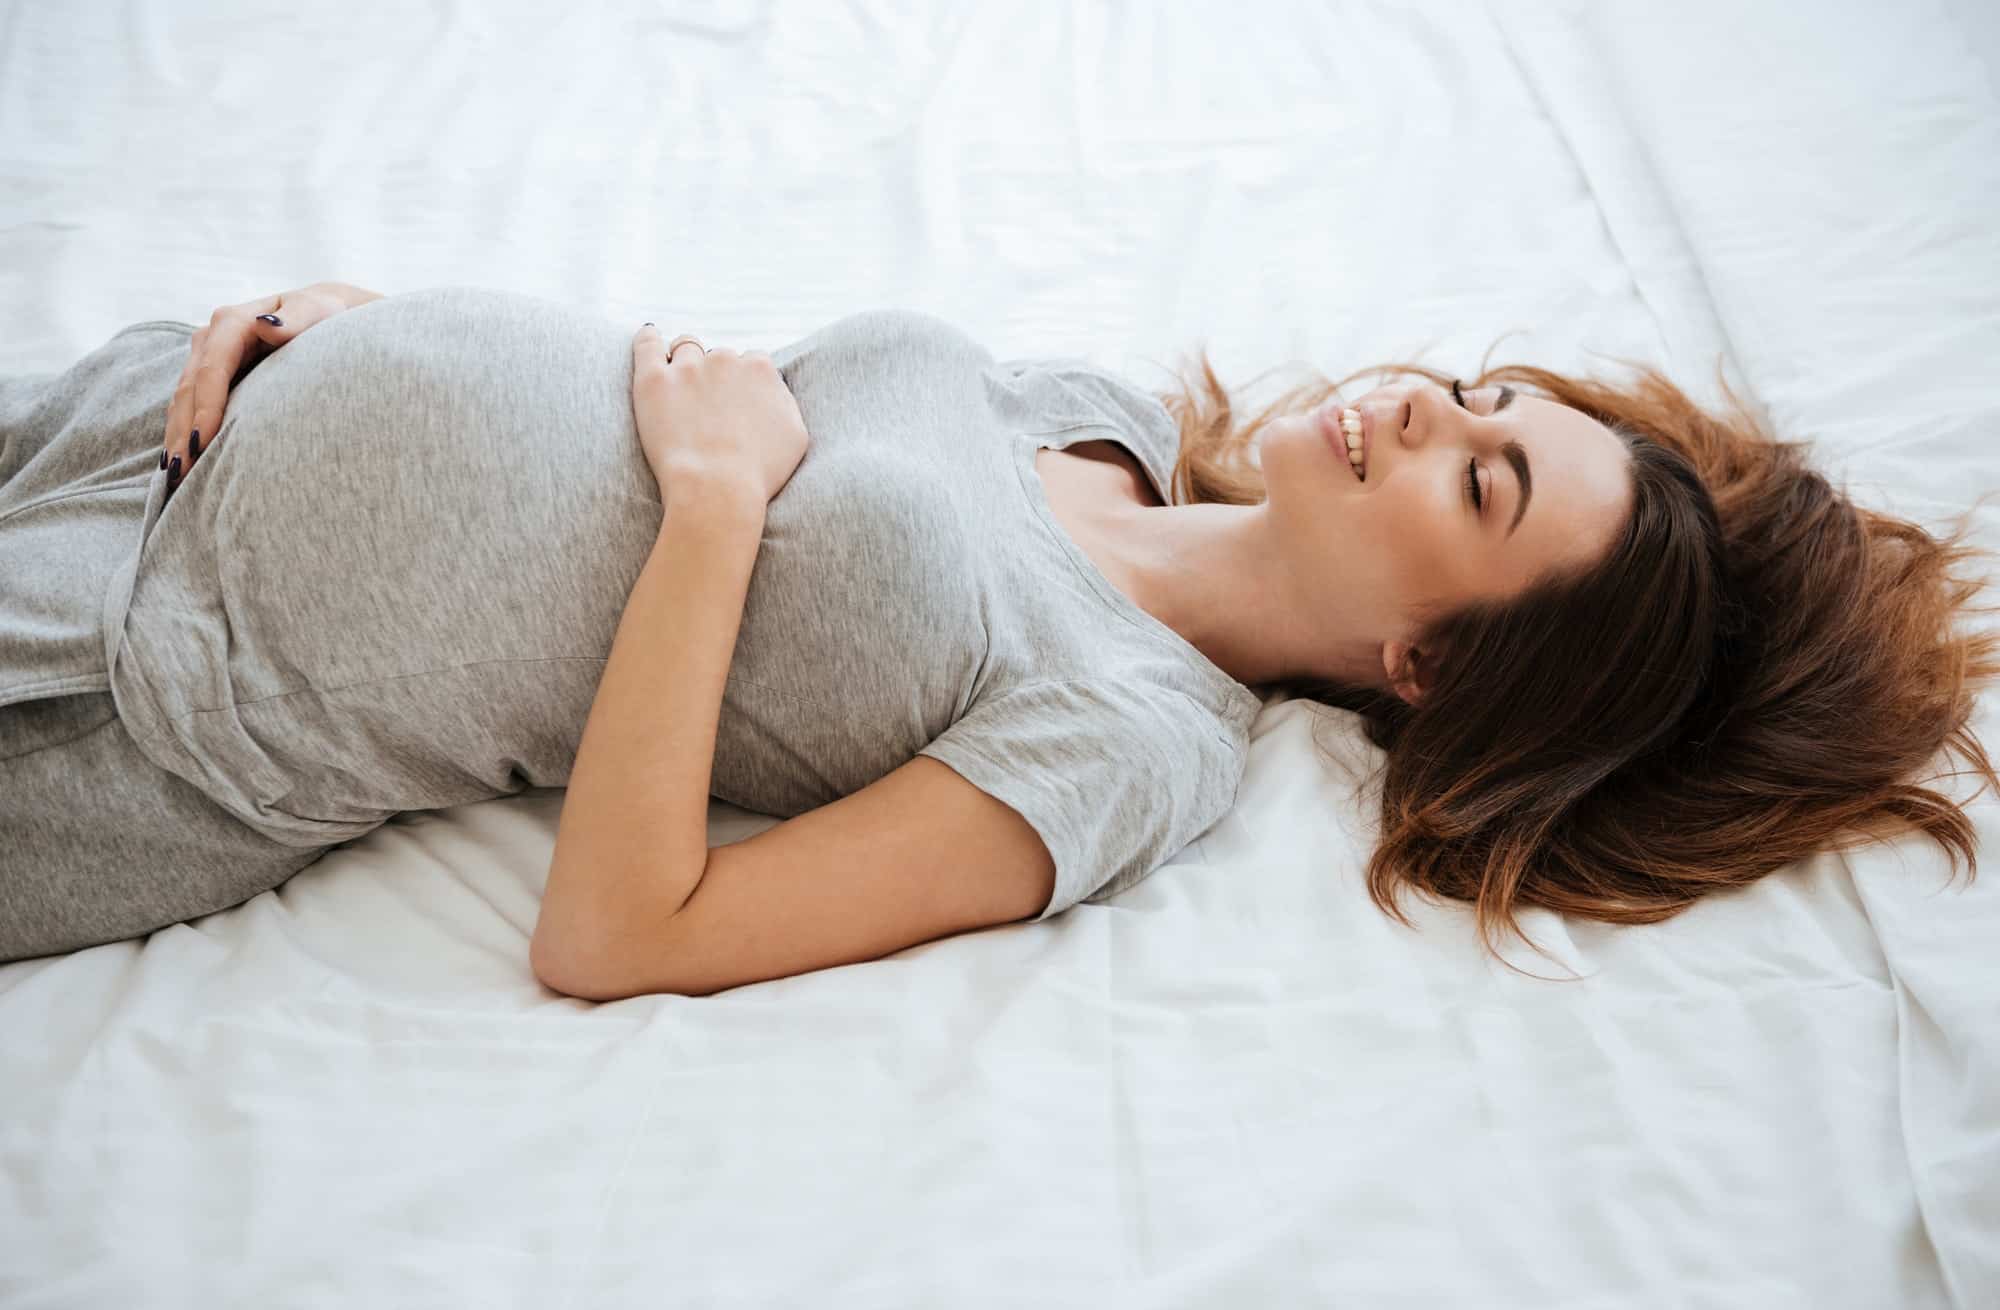 როგორ გადავლახოთ მშობიარობის შიში? - რჩევები ორსულ ქალბატონებს